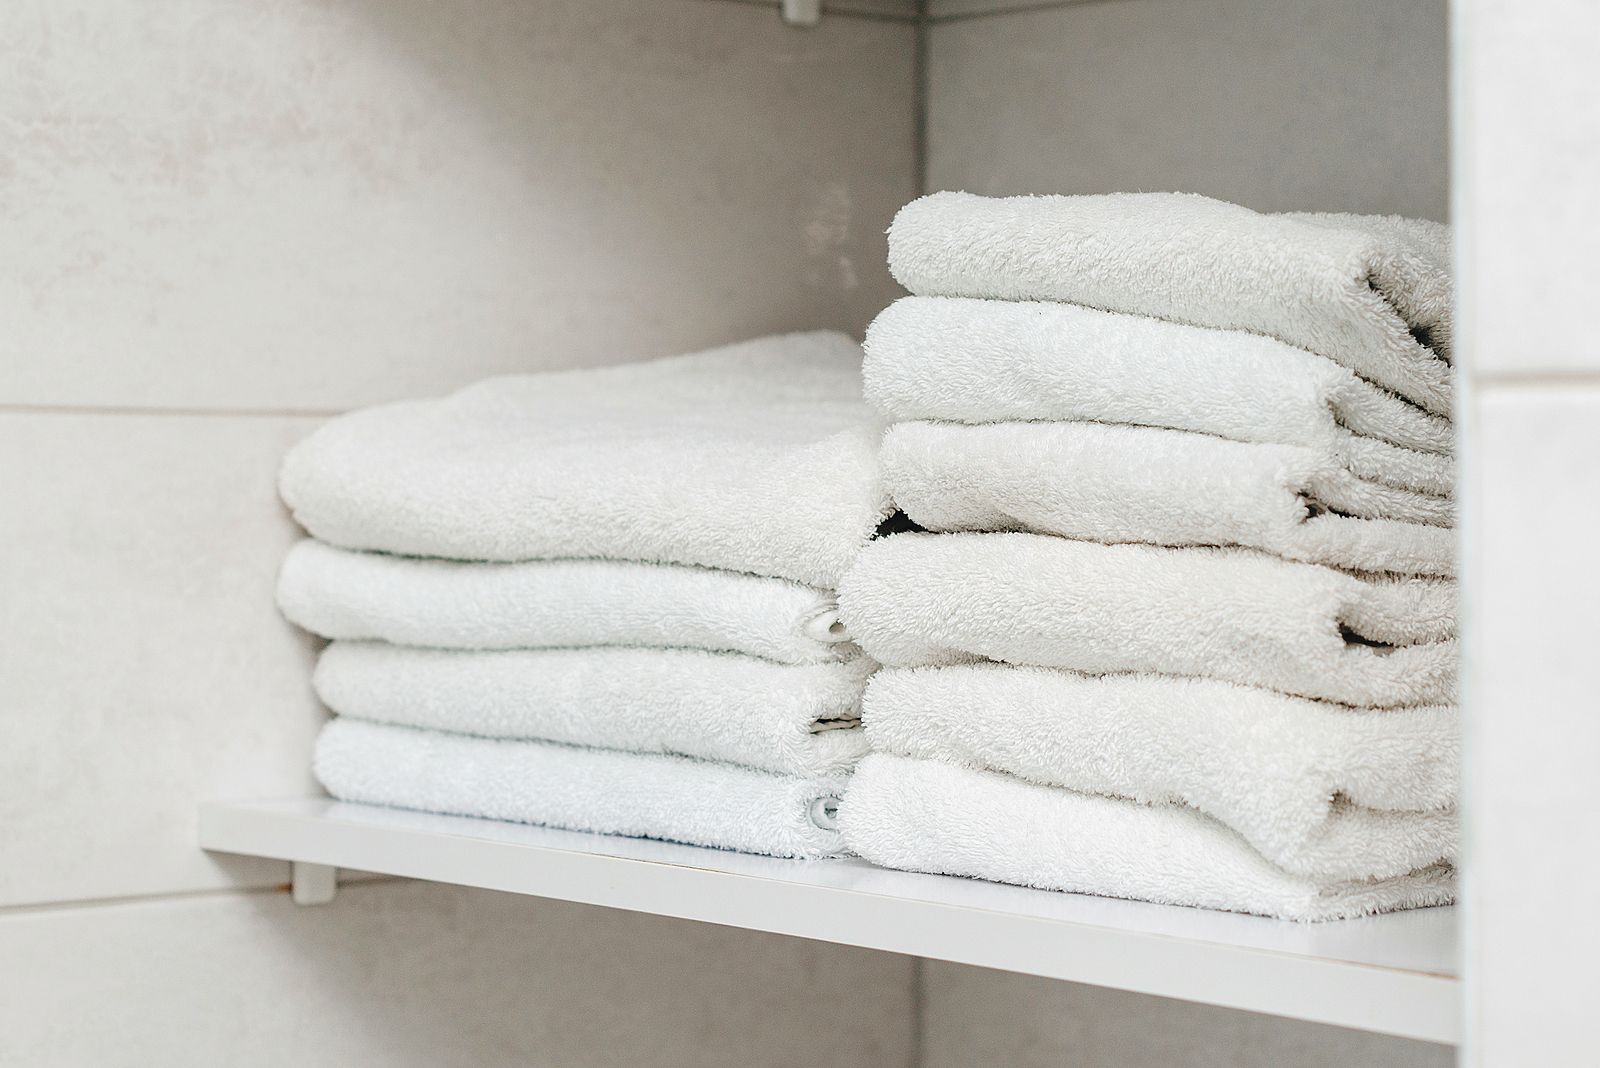 Por qué las toallas blancas pierden su color?